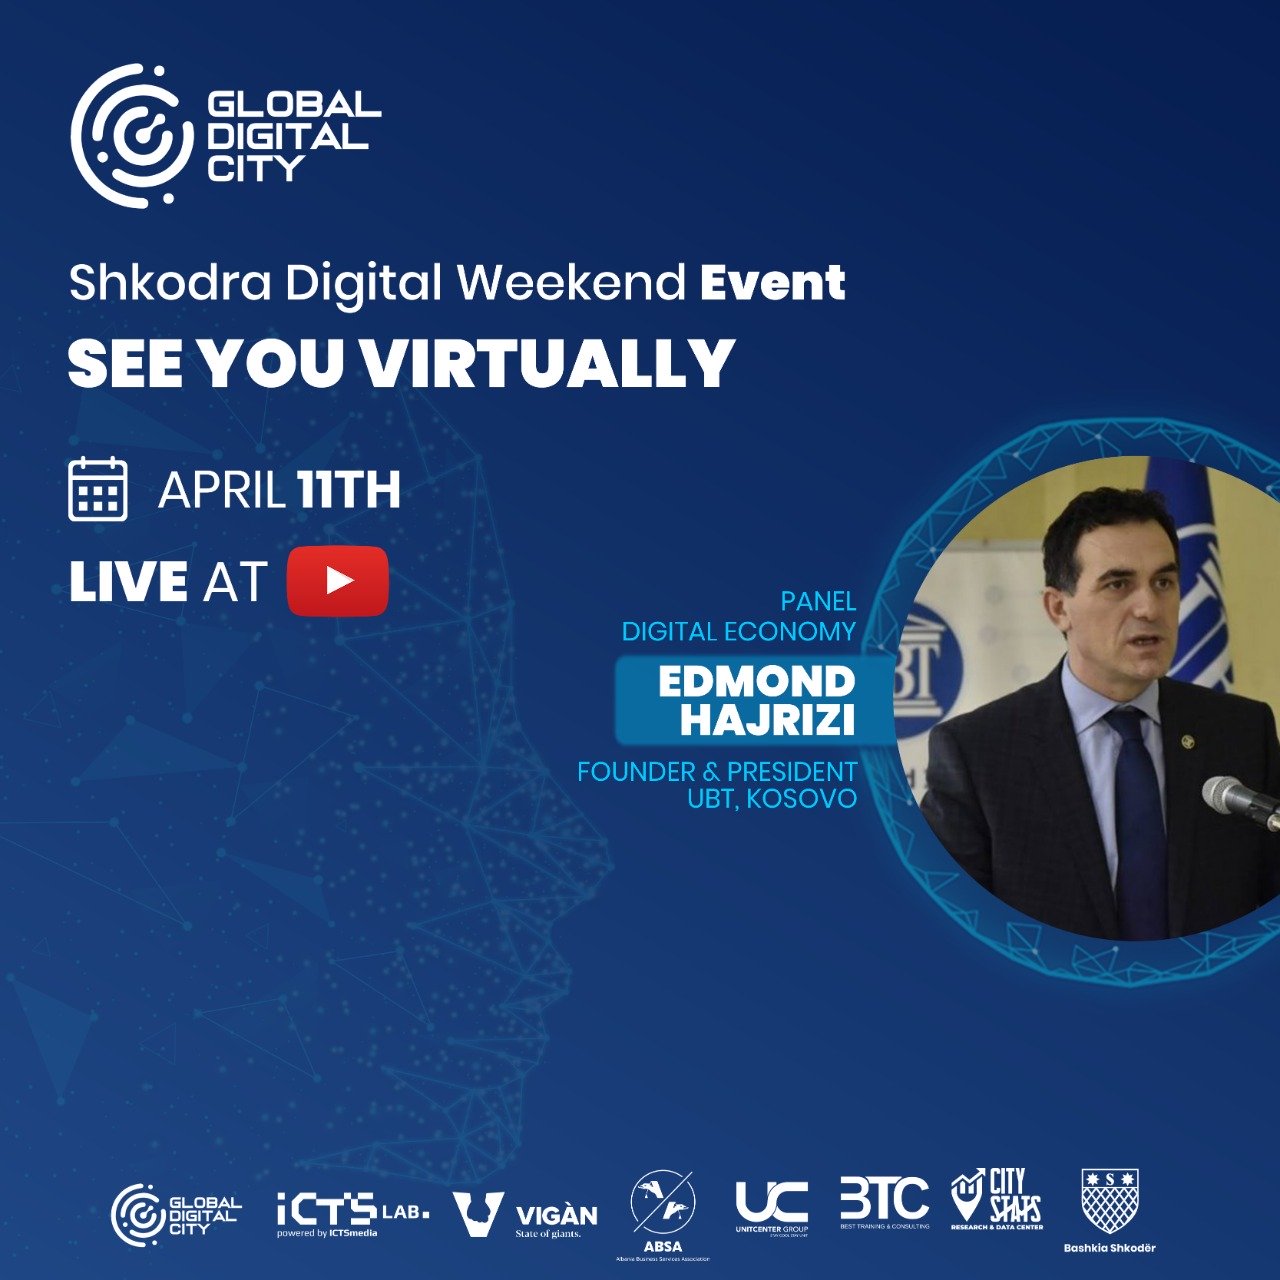 Folës në panelin e Digjital Economy në eventin Shkodra Digjital Weekend, Edmond Hajrizi dha kontributin e tij përmes fjalës në shtimin e vlerave të këtij eventi.